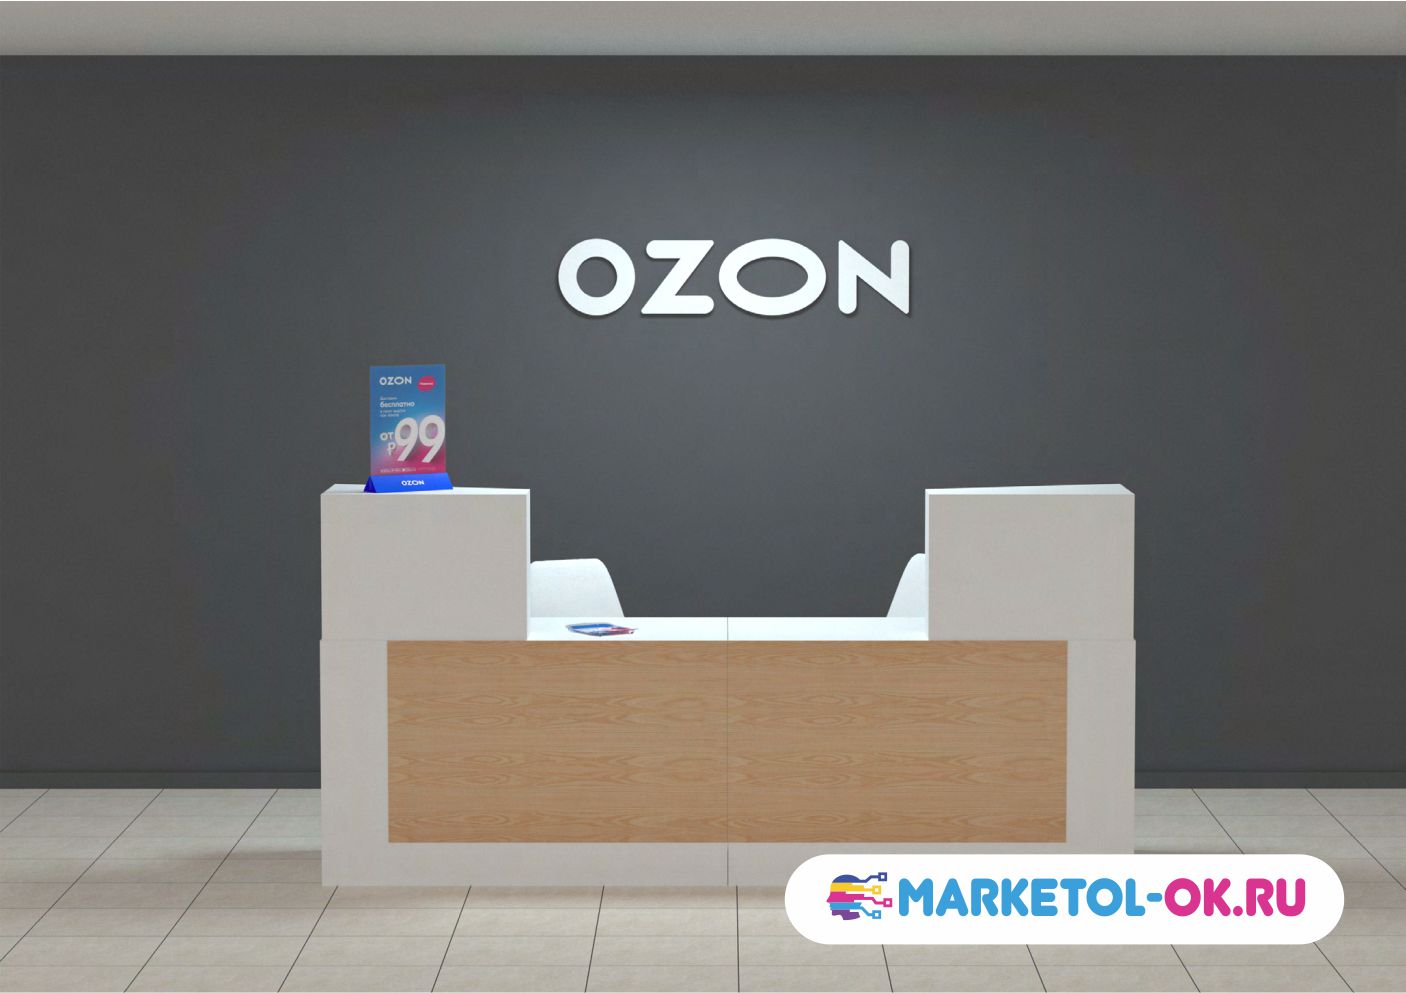 ozon вывеска изготовление. Брендирование ПВЗ ozon